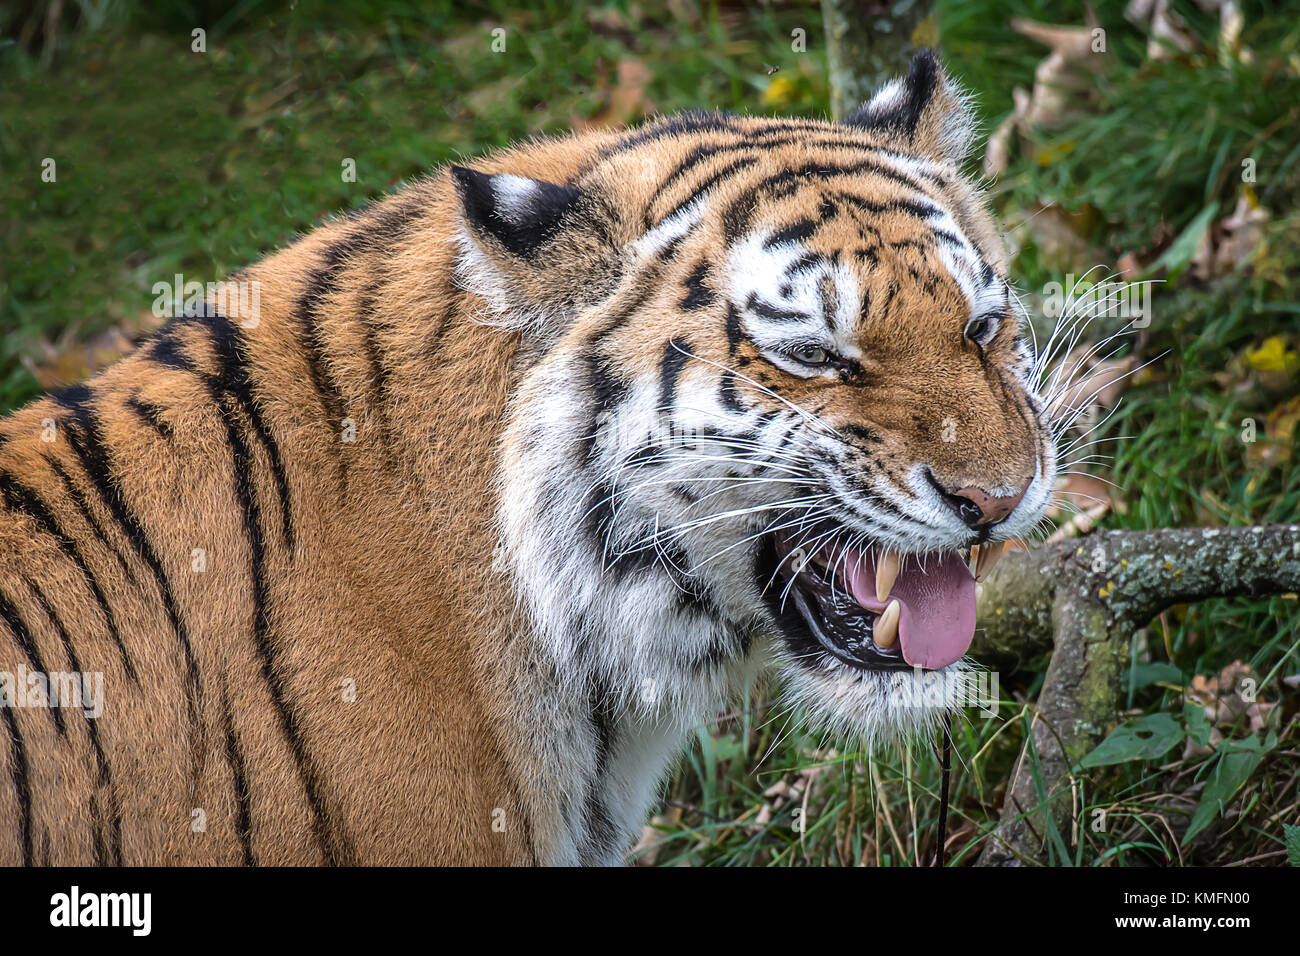 Ein sehr nahes Porträt der Kopf eines Tigers, der Knurrende und zeigt seine Zähne Stockfoto